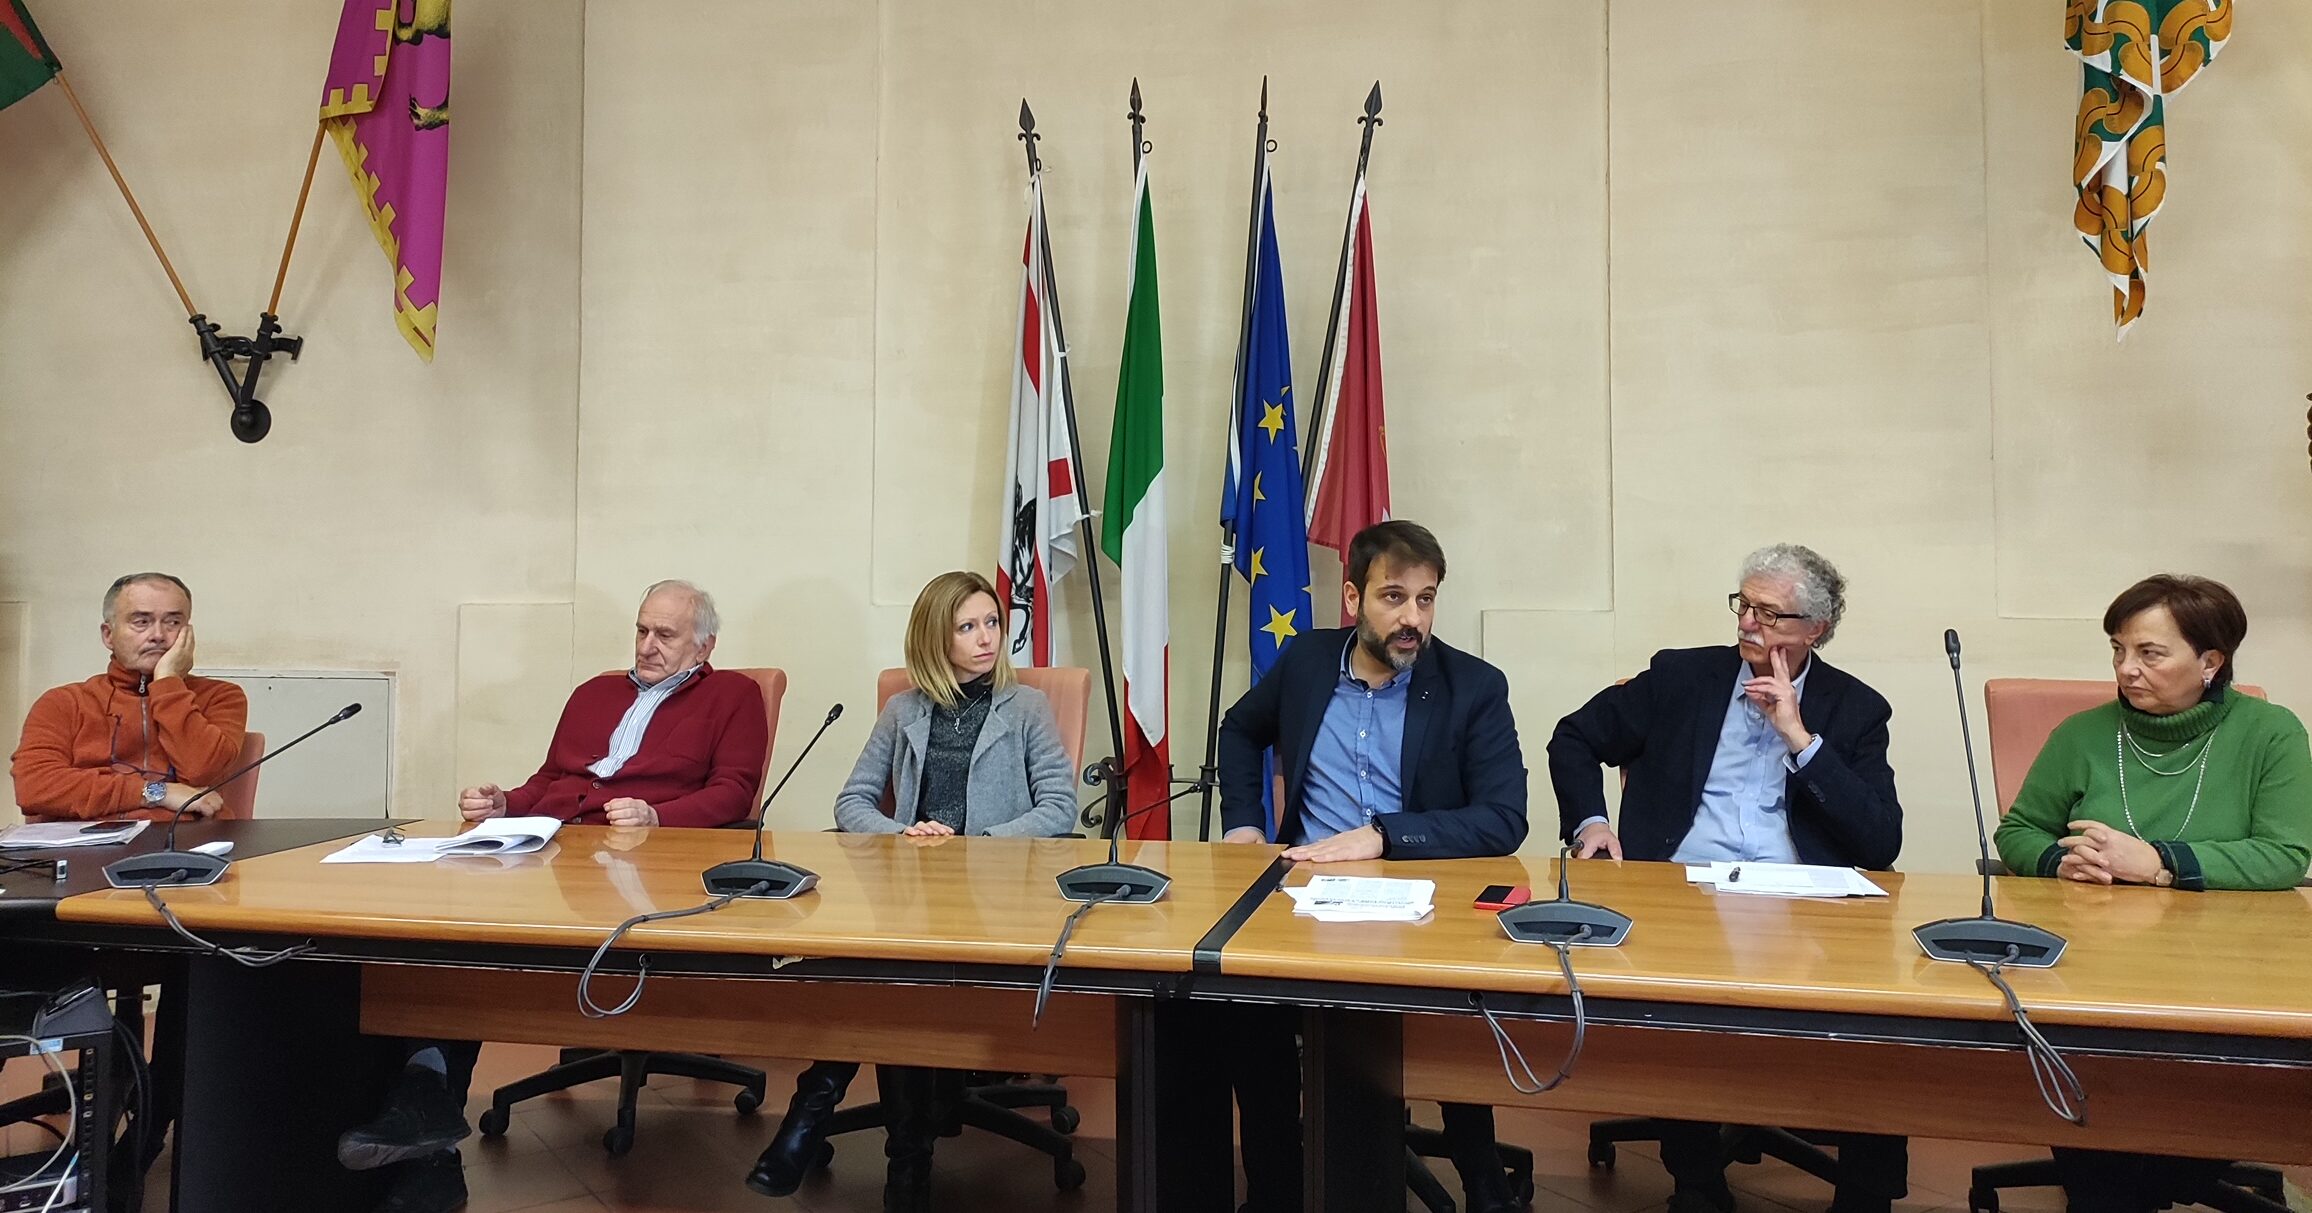 Arezzo 2020 per Cambiare a Sinistra: “Valorizzare il ruolo dei centri di aggregazione sociale”